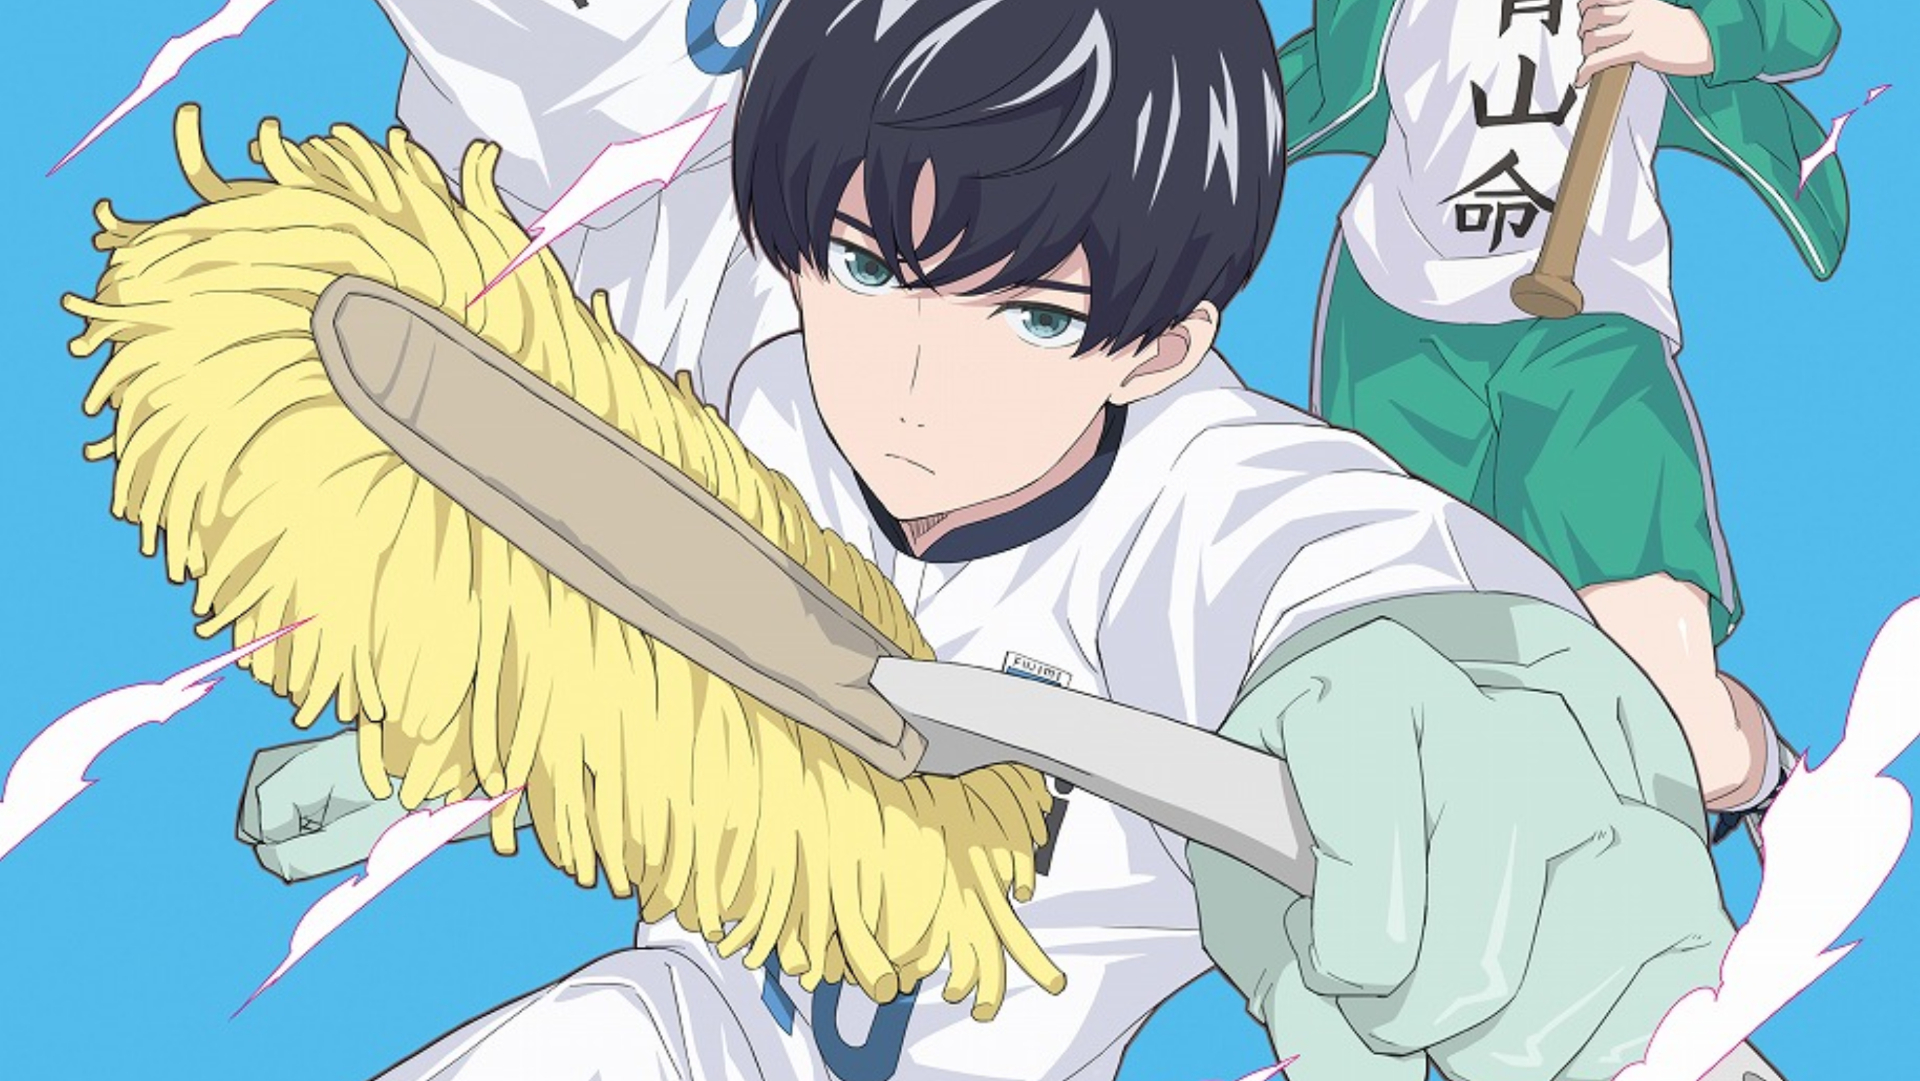 Aoyama em seu uniforme de futebol enquanto segurava utensílios de limpeza.